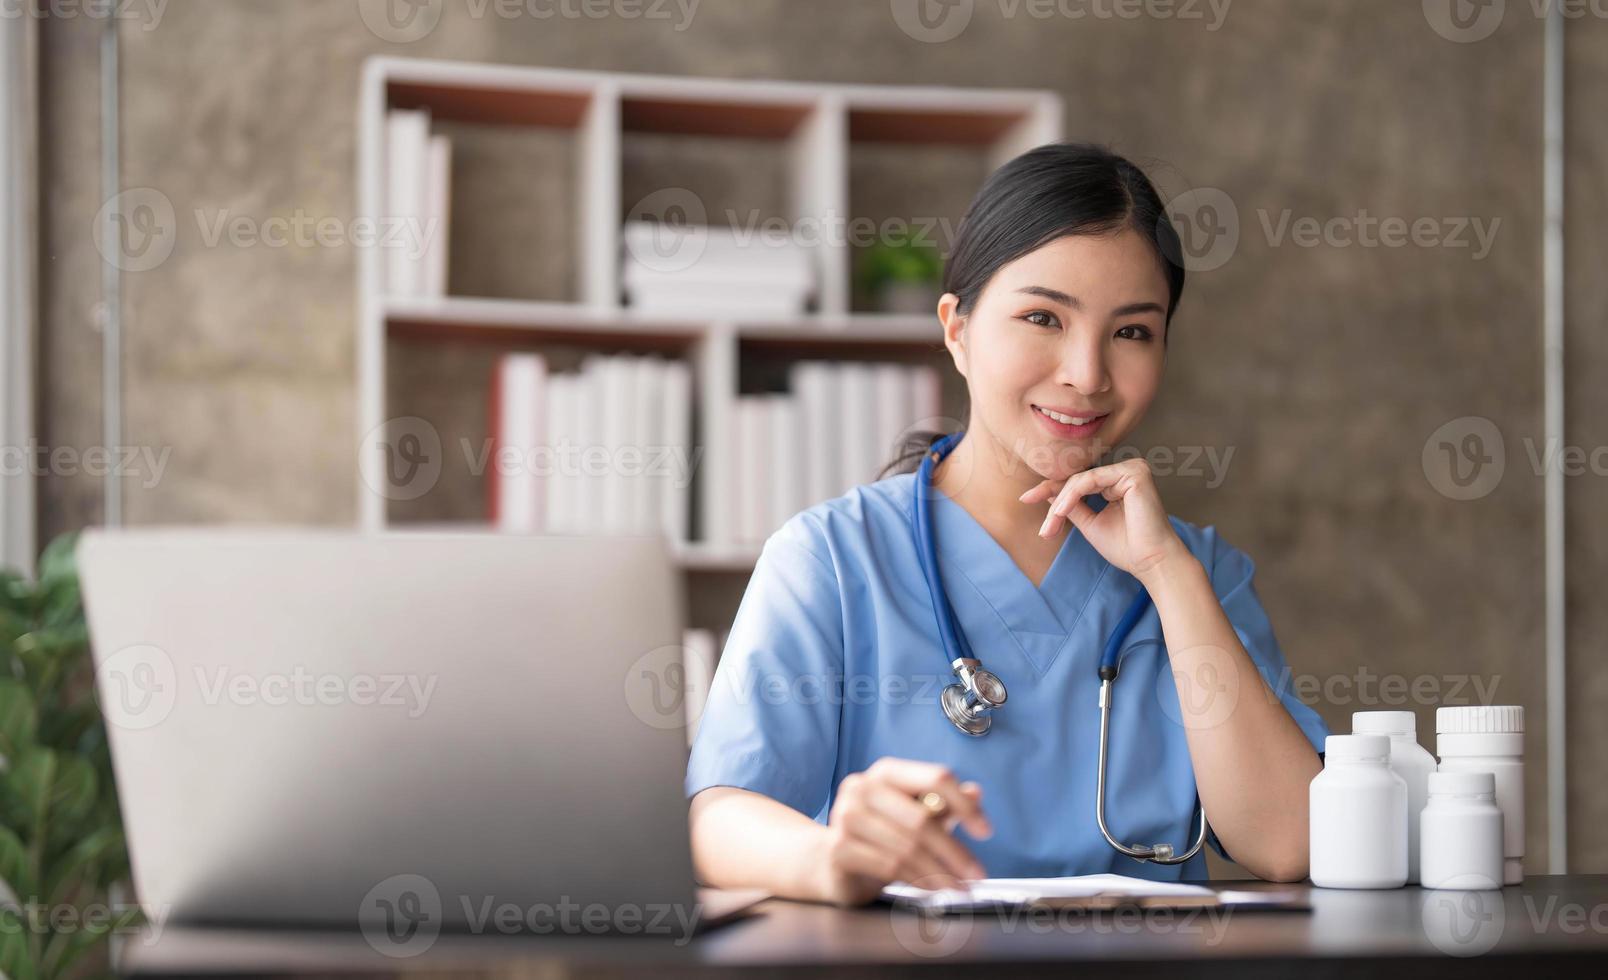 médico asiático joven hermosa mujer sonriendo usando una computadora portátil y escribiendo algo en papeleo o papel blanco en el portapapeles en la oficina del hospital, concepto médico de atención médica foto